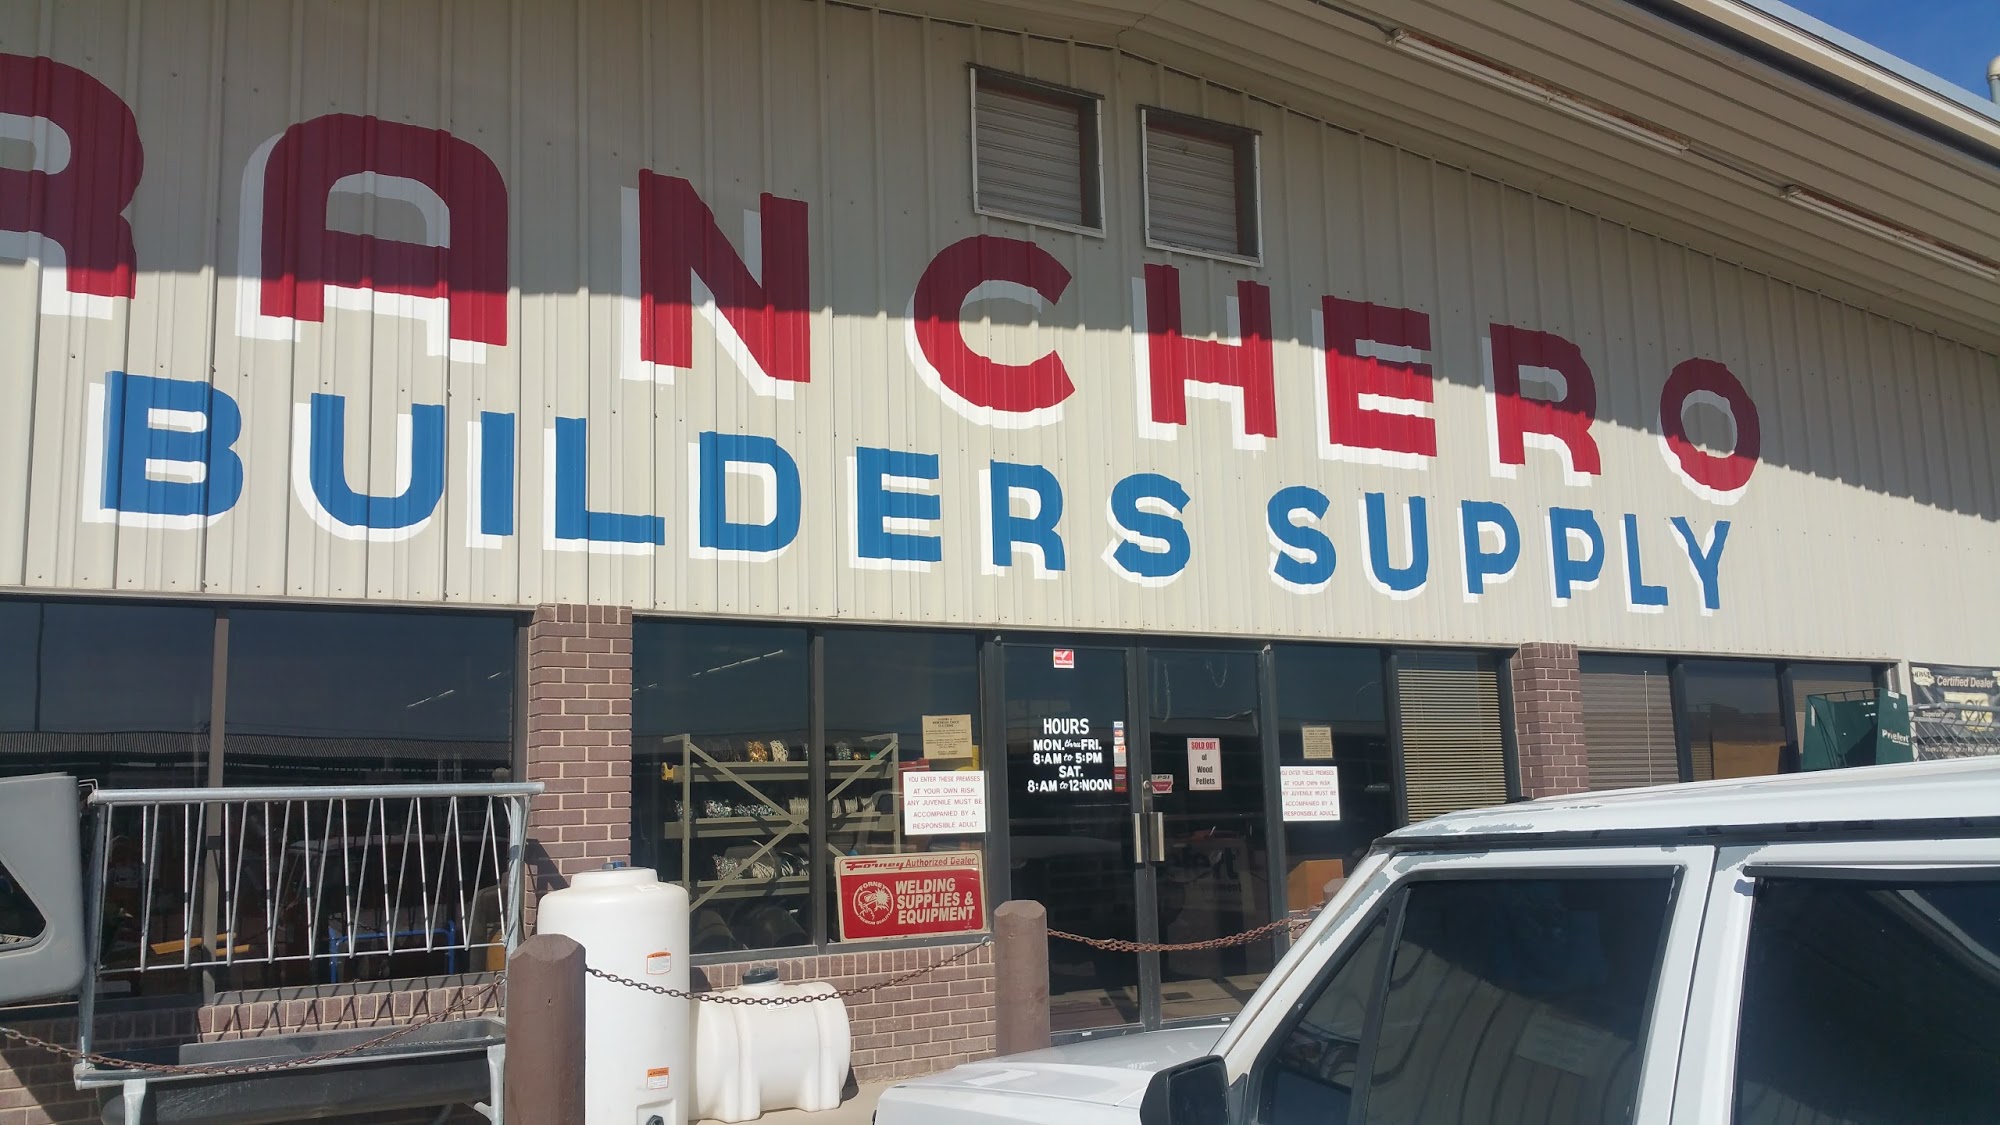 Ranchero Builders Supply Co